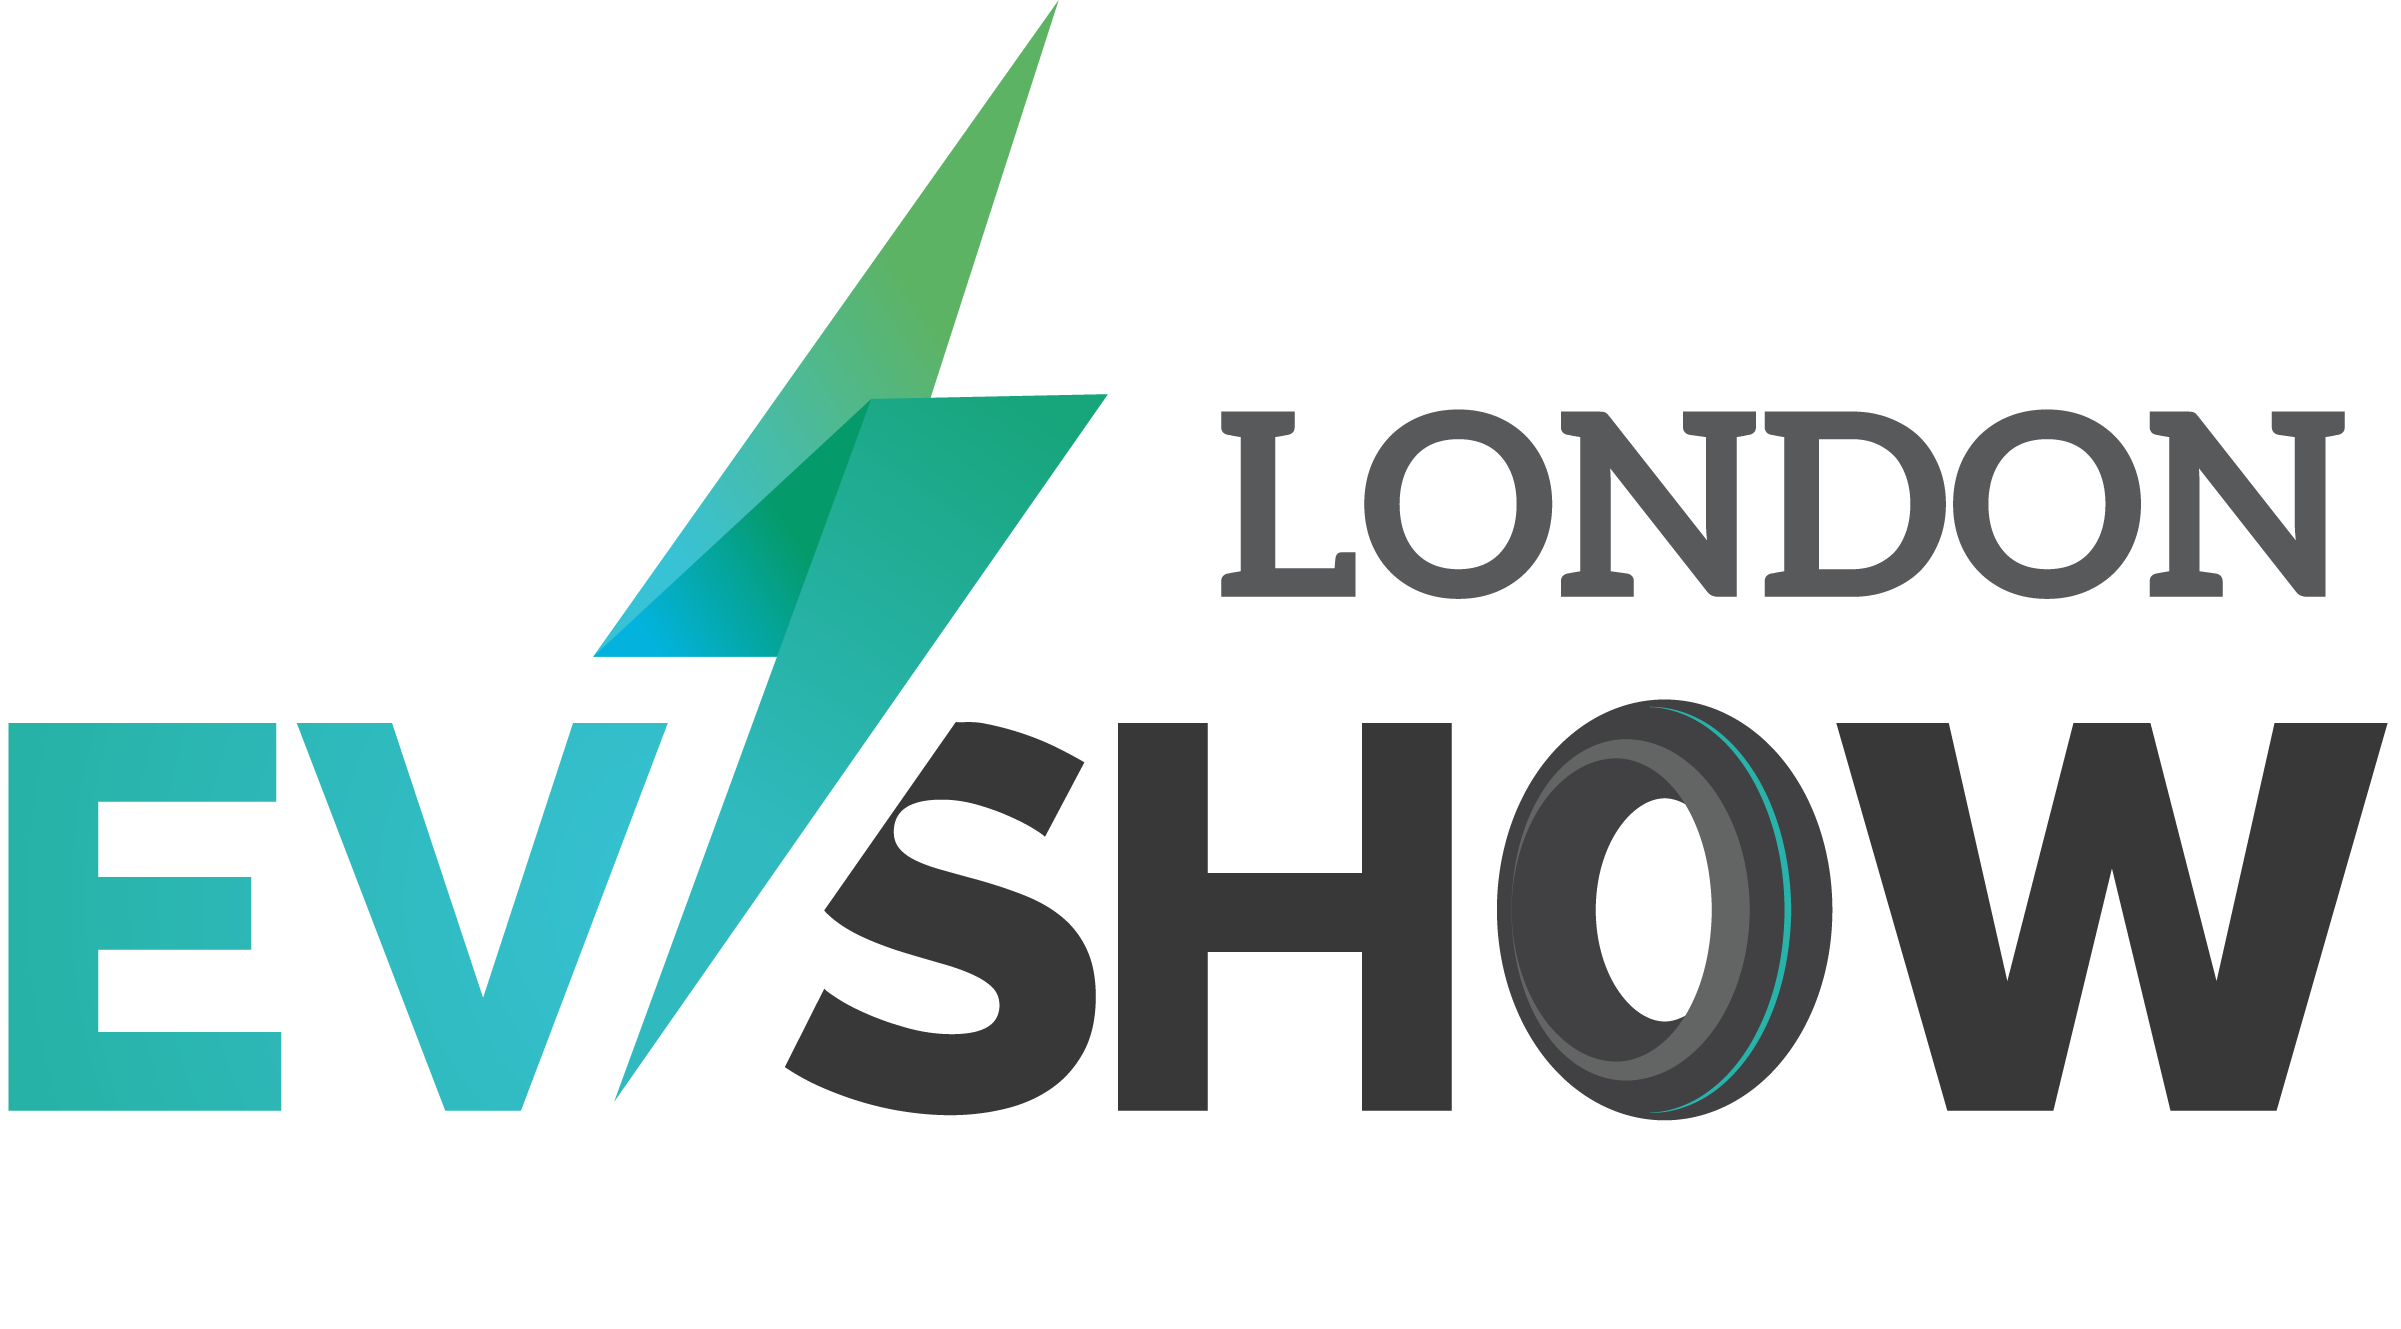 London EV Show